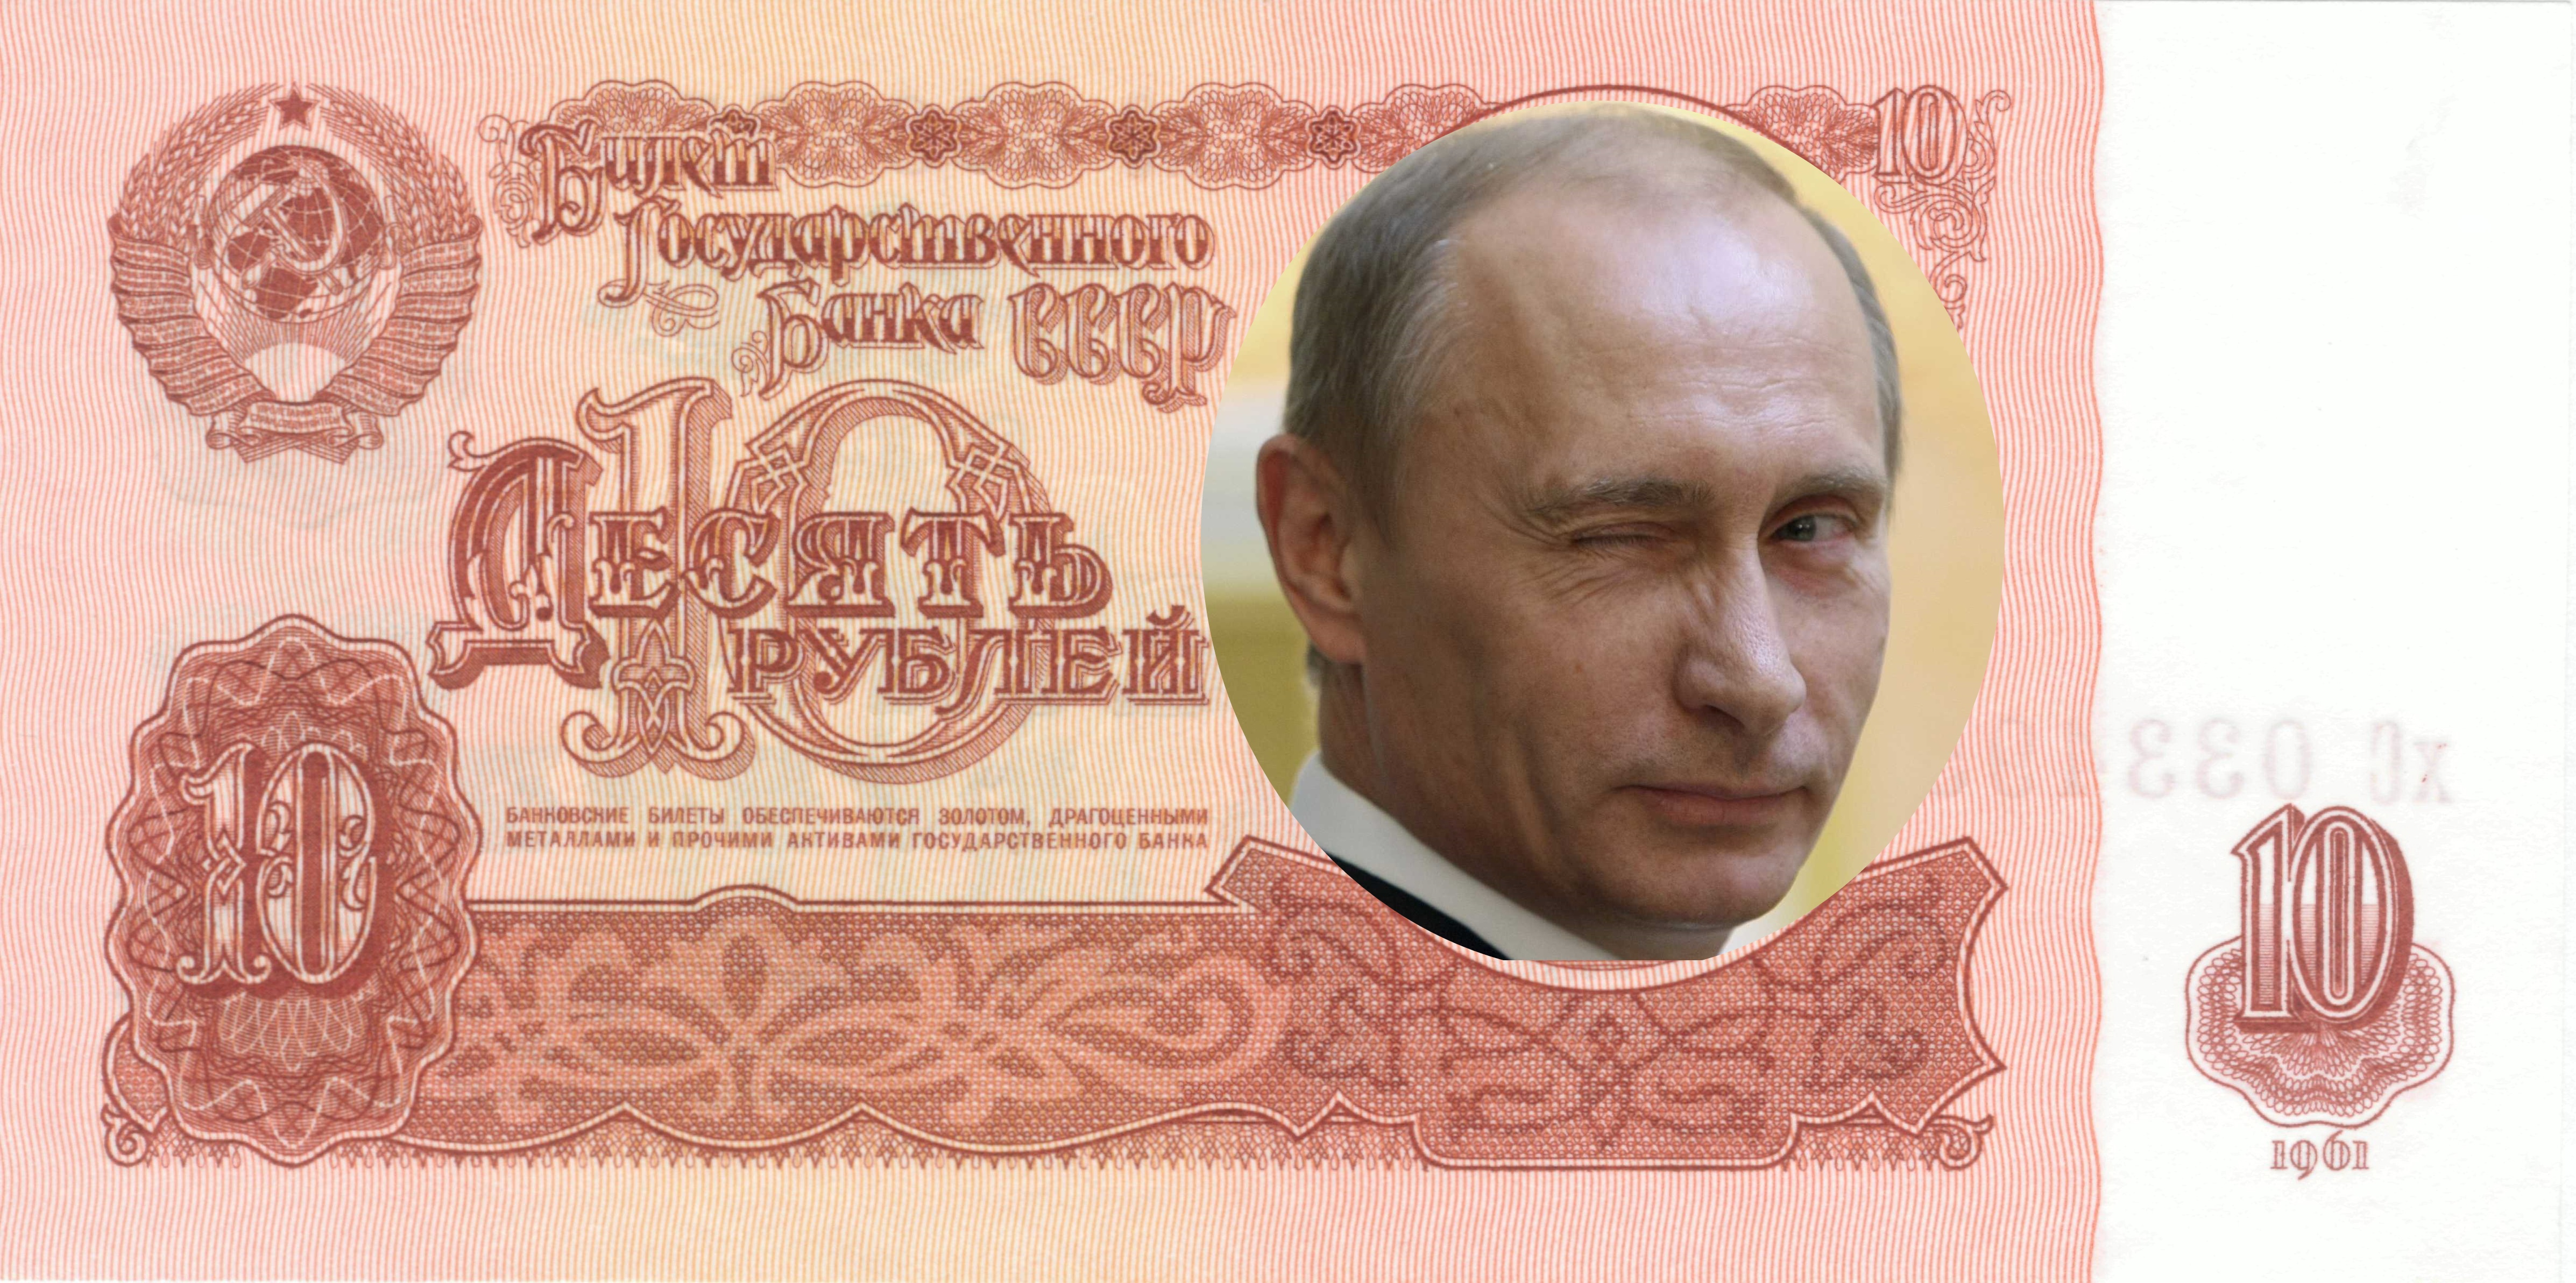 russian money with putin - Renés PointsRenés Points